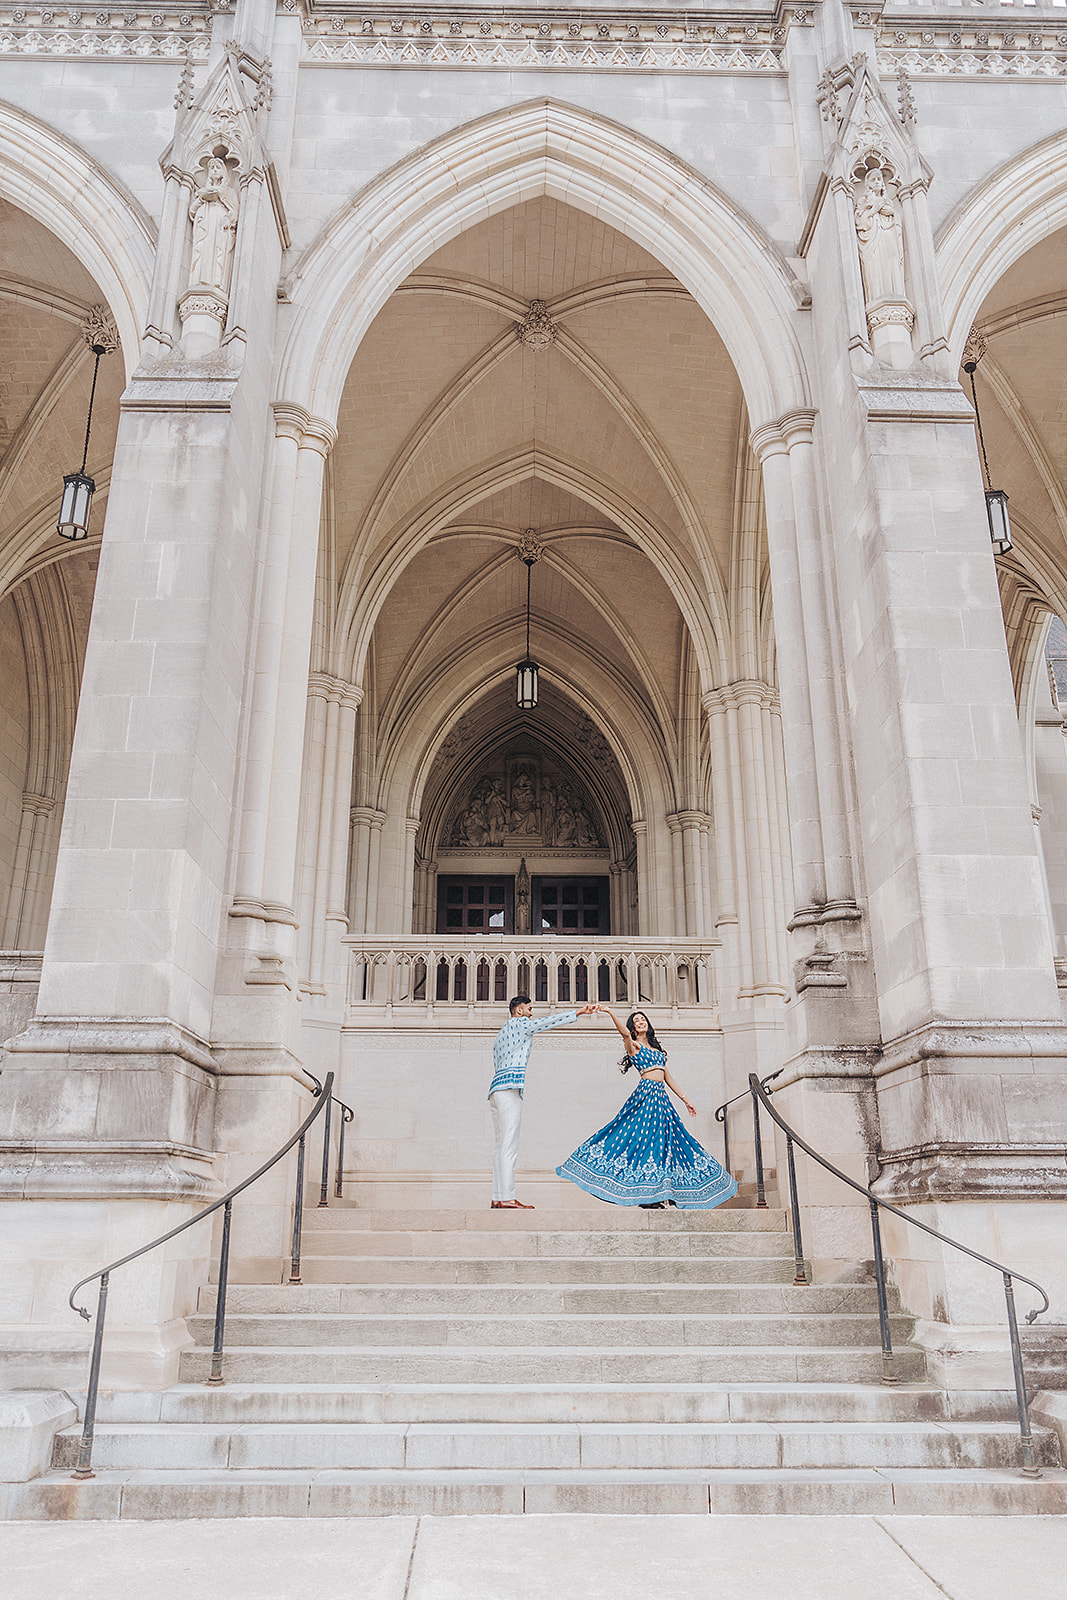 Washington National Cathedral engagement photo shoot 